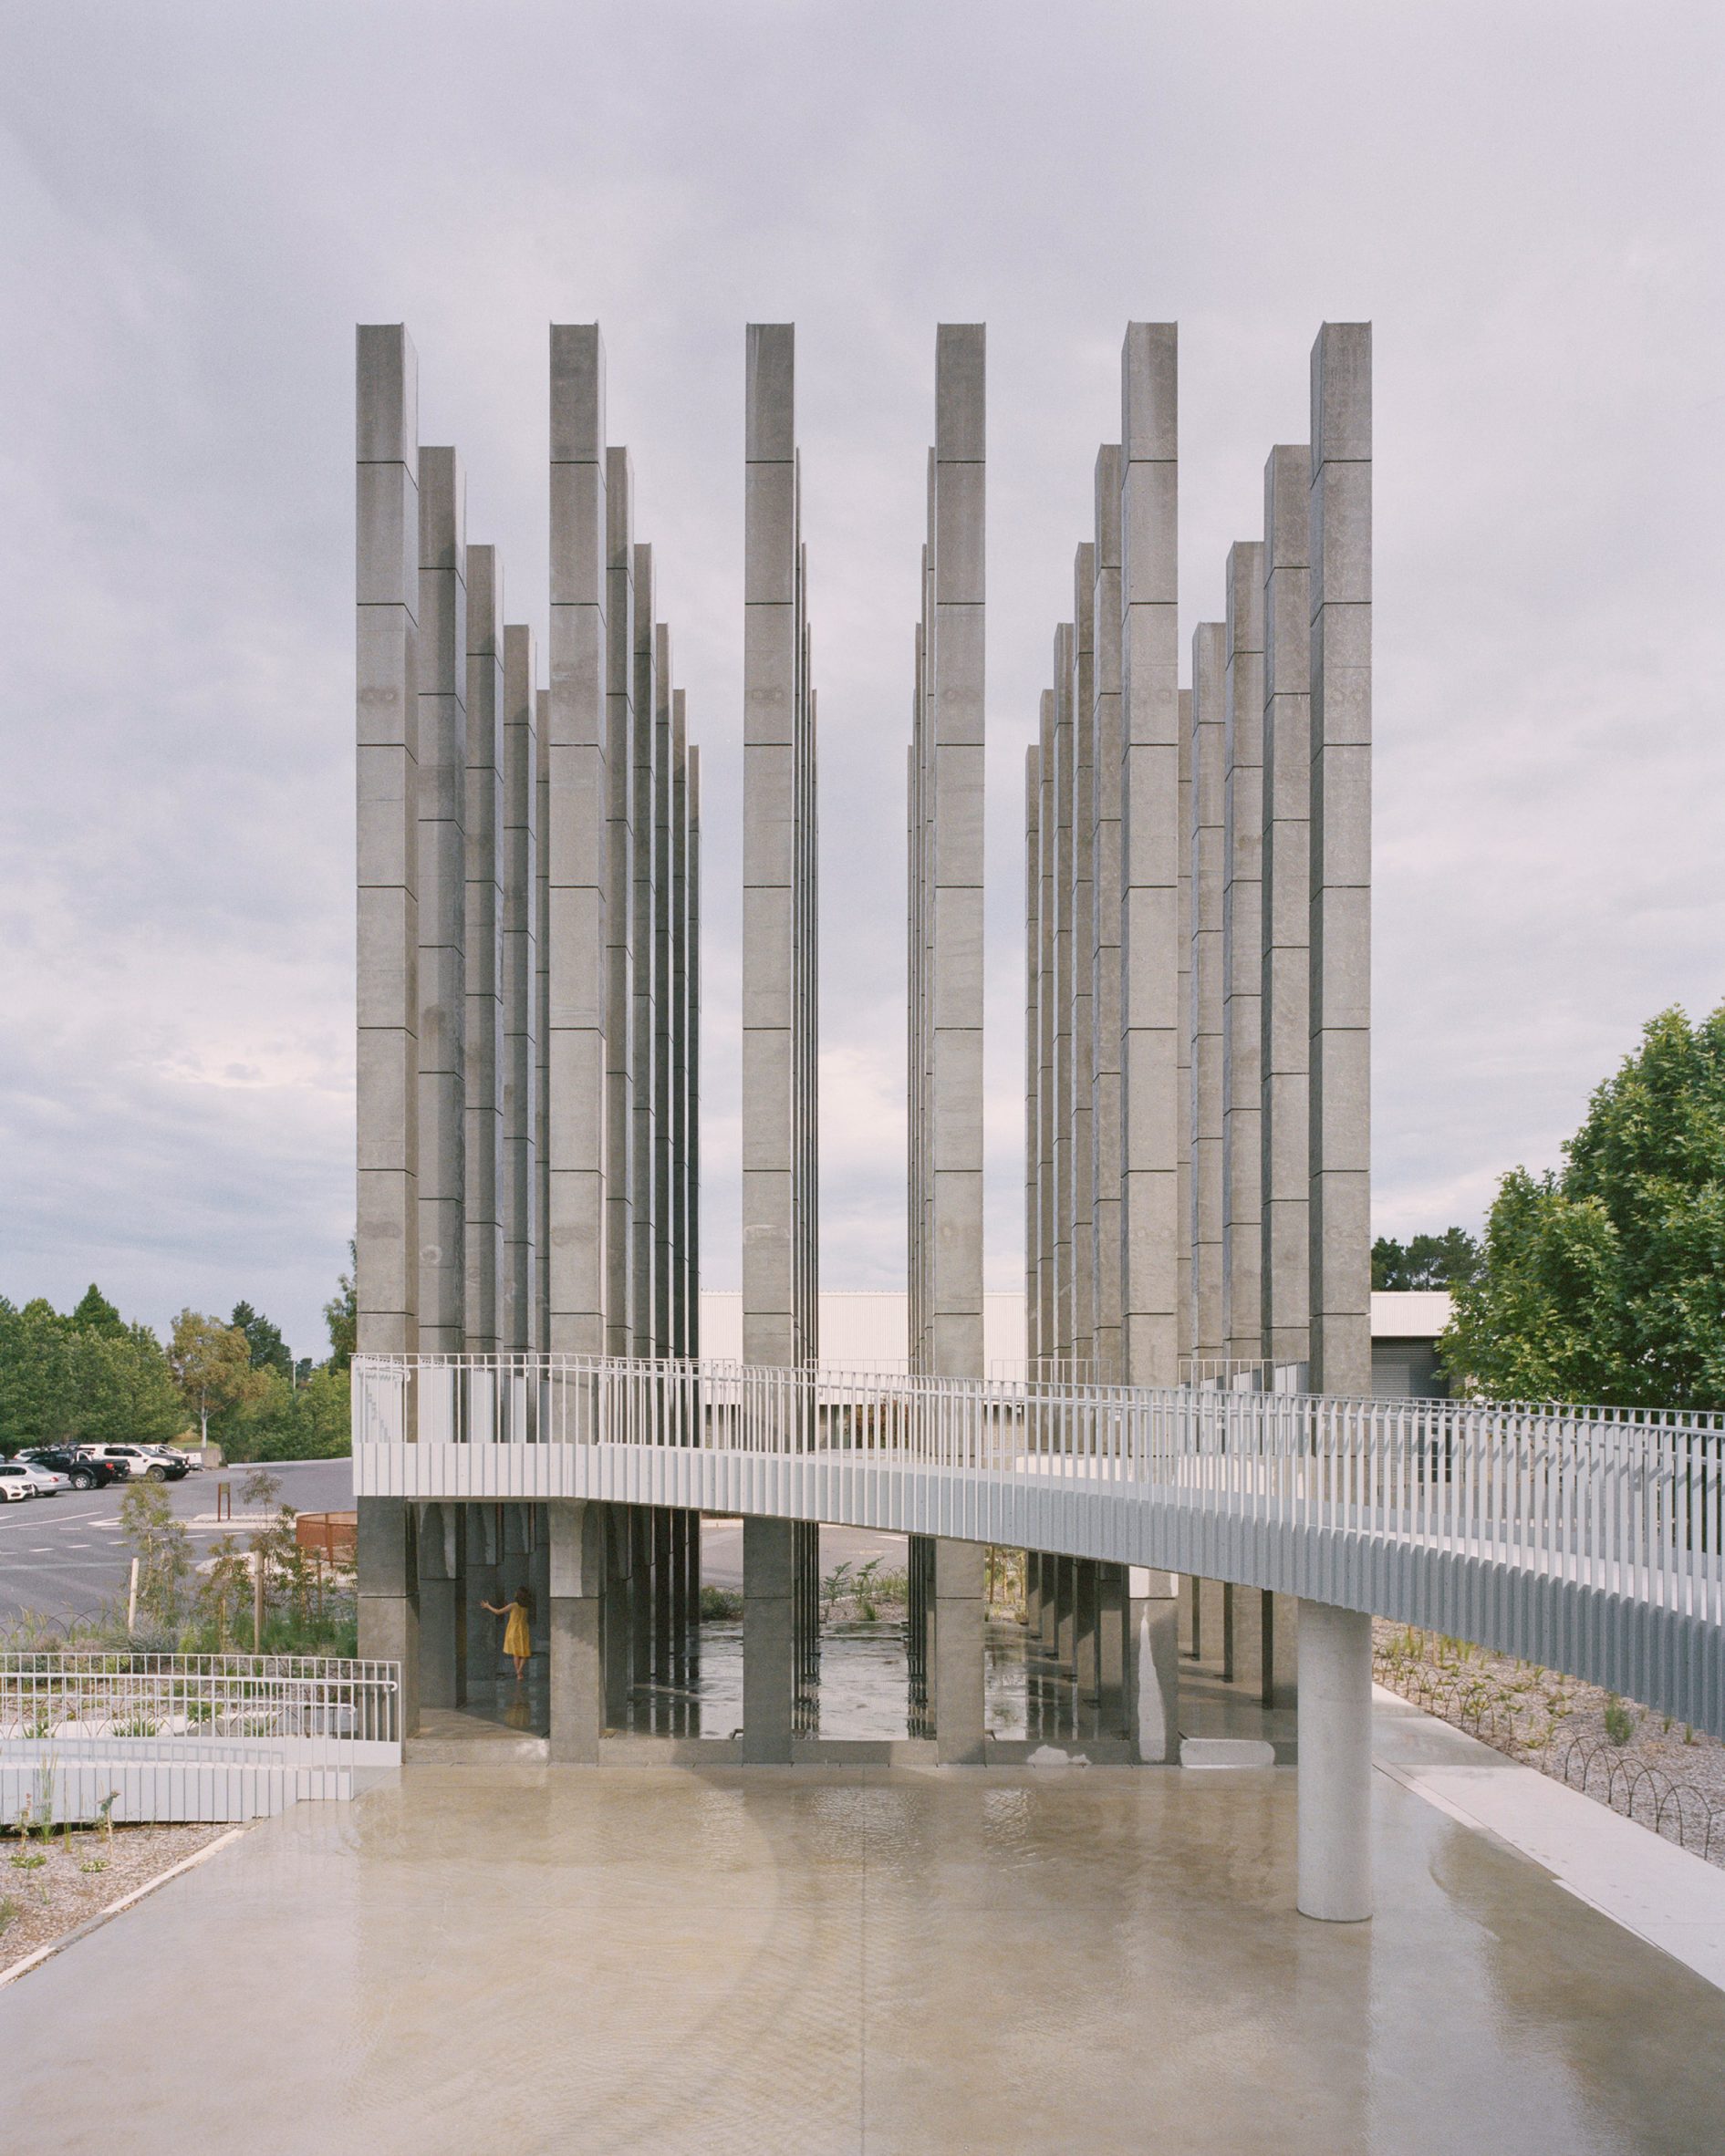 Artwork composed of 36 concrete pillars